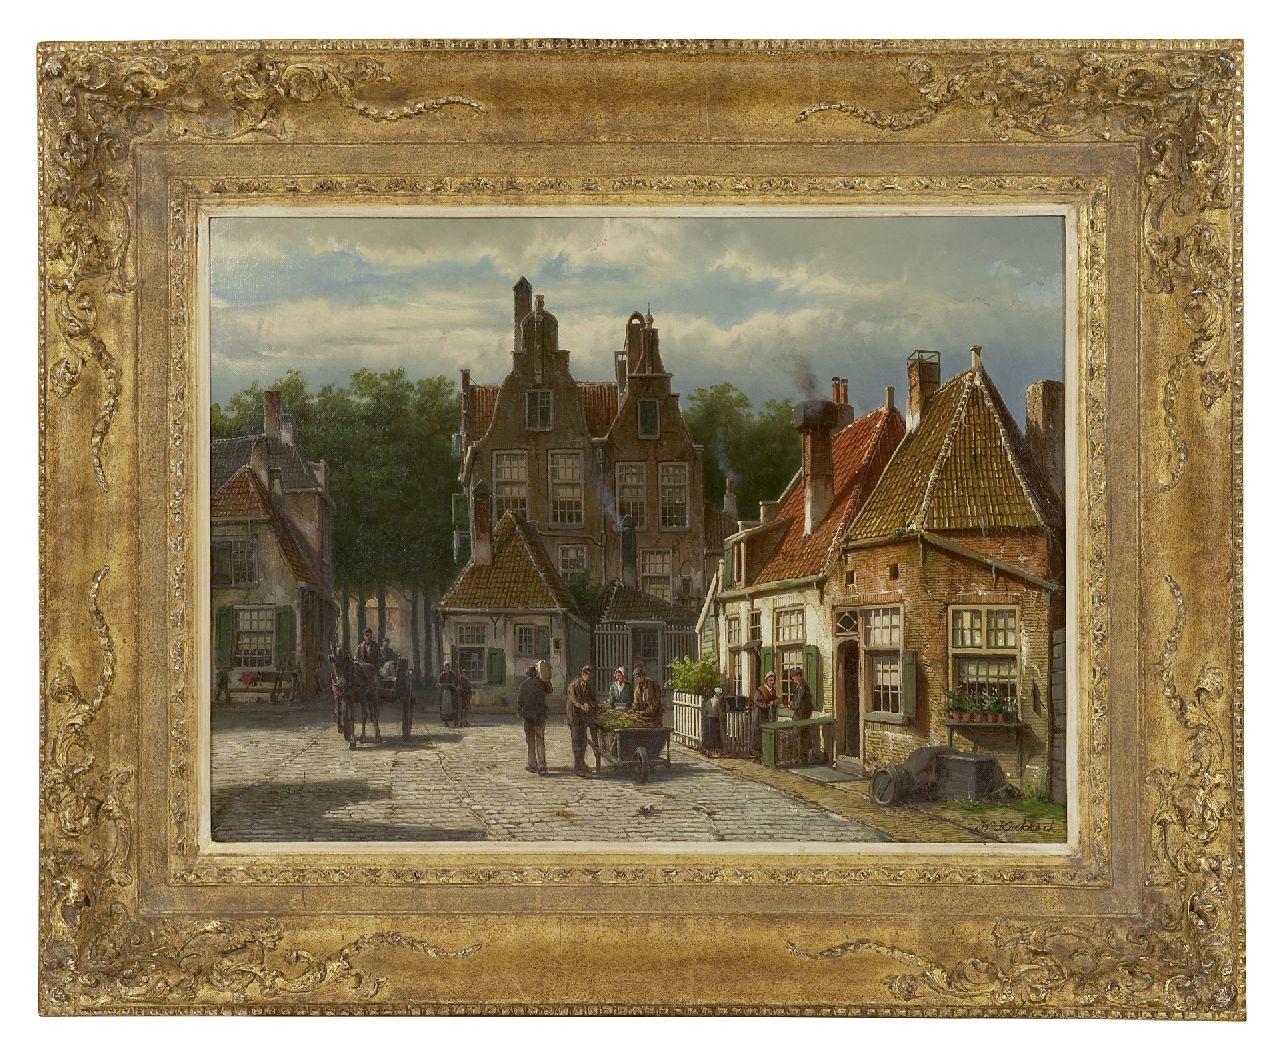 Koekkoek W.  | Willem Koekkoek, Dorpsbewoners op een zonnig plein, olieverf op doek 44,5 x 60,7 cm, gesigneerd rechtsonder